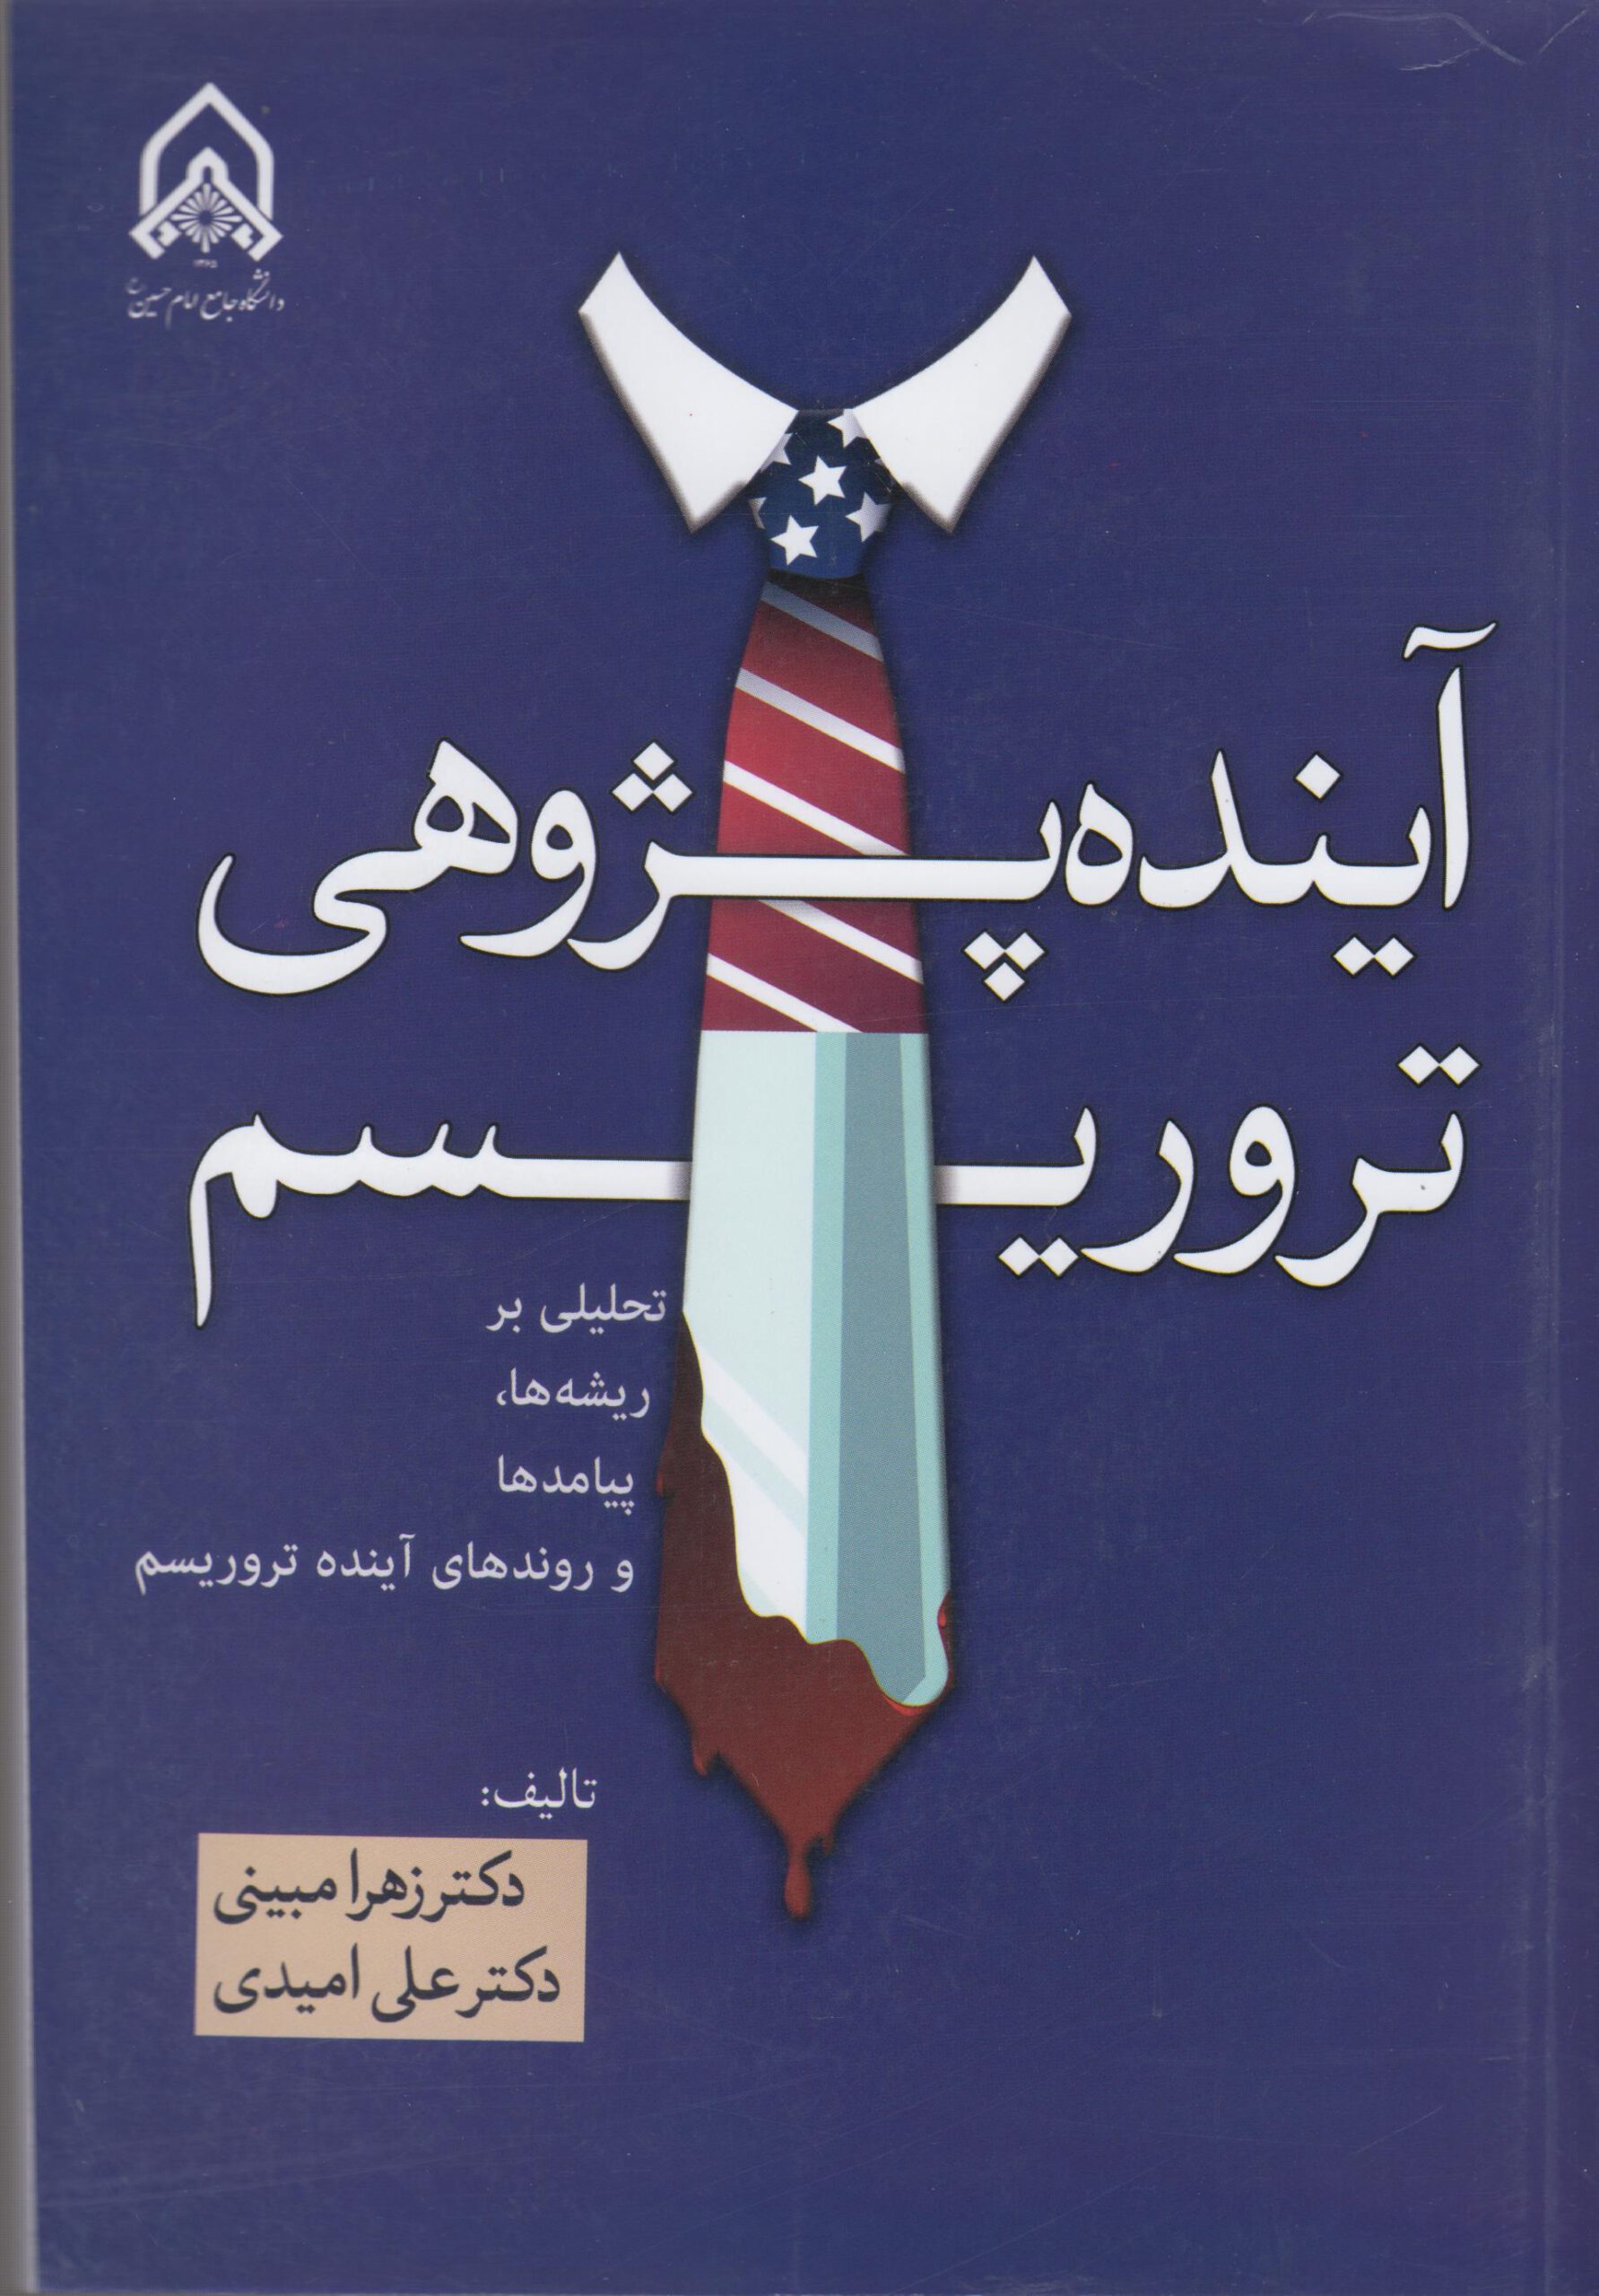 کتاب آینده پژوهی تروریسم (تحلیلی بر ریشه ها،پیامد ها و روند های آینده تروریسم) منتشر شد